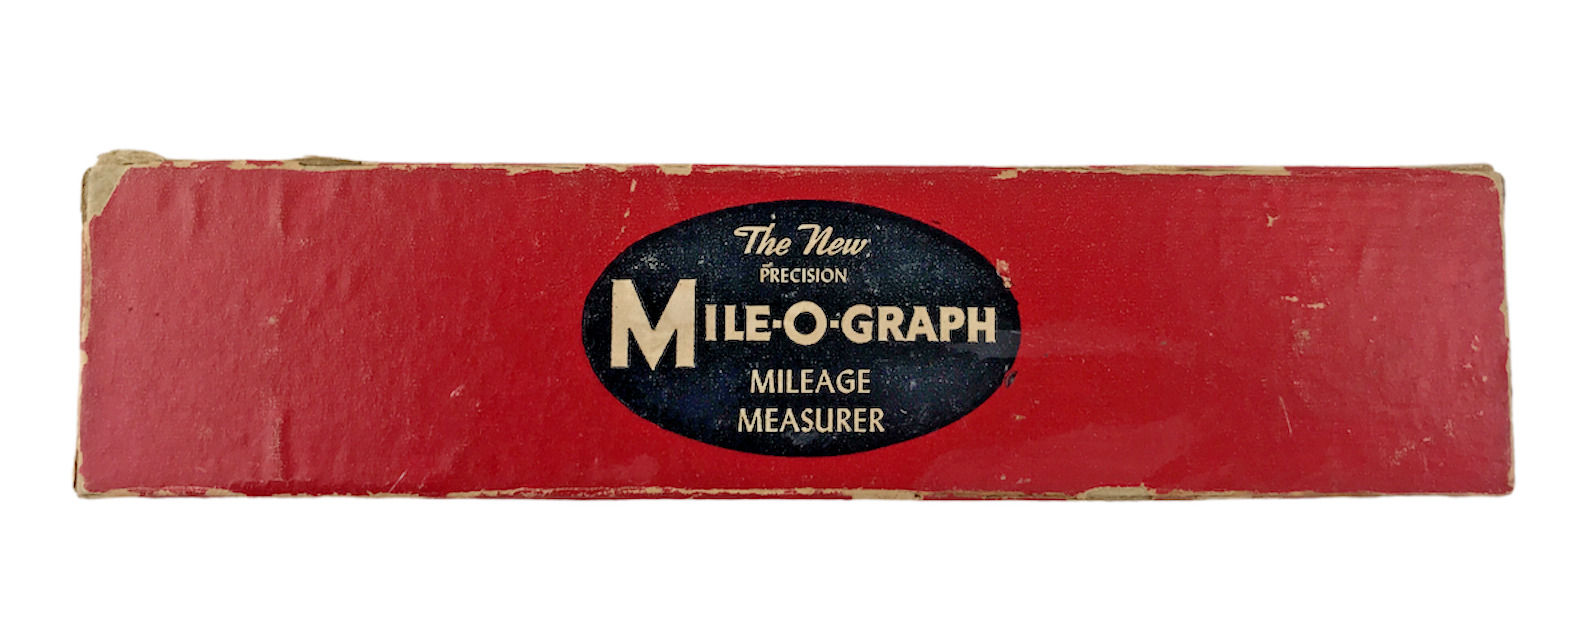 Vintage The New Precision Mile-O-Graph Mileage Measurer, Original Box